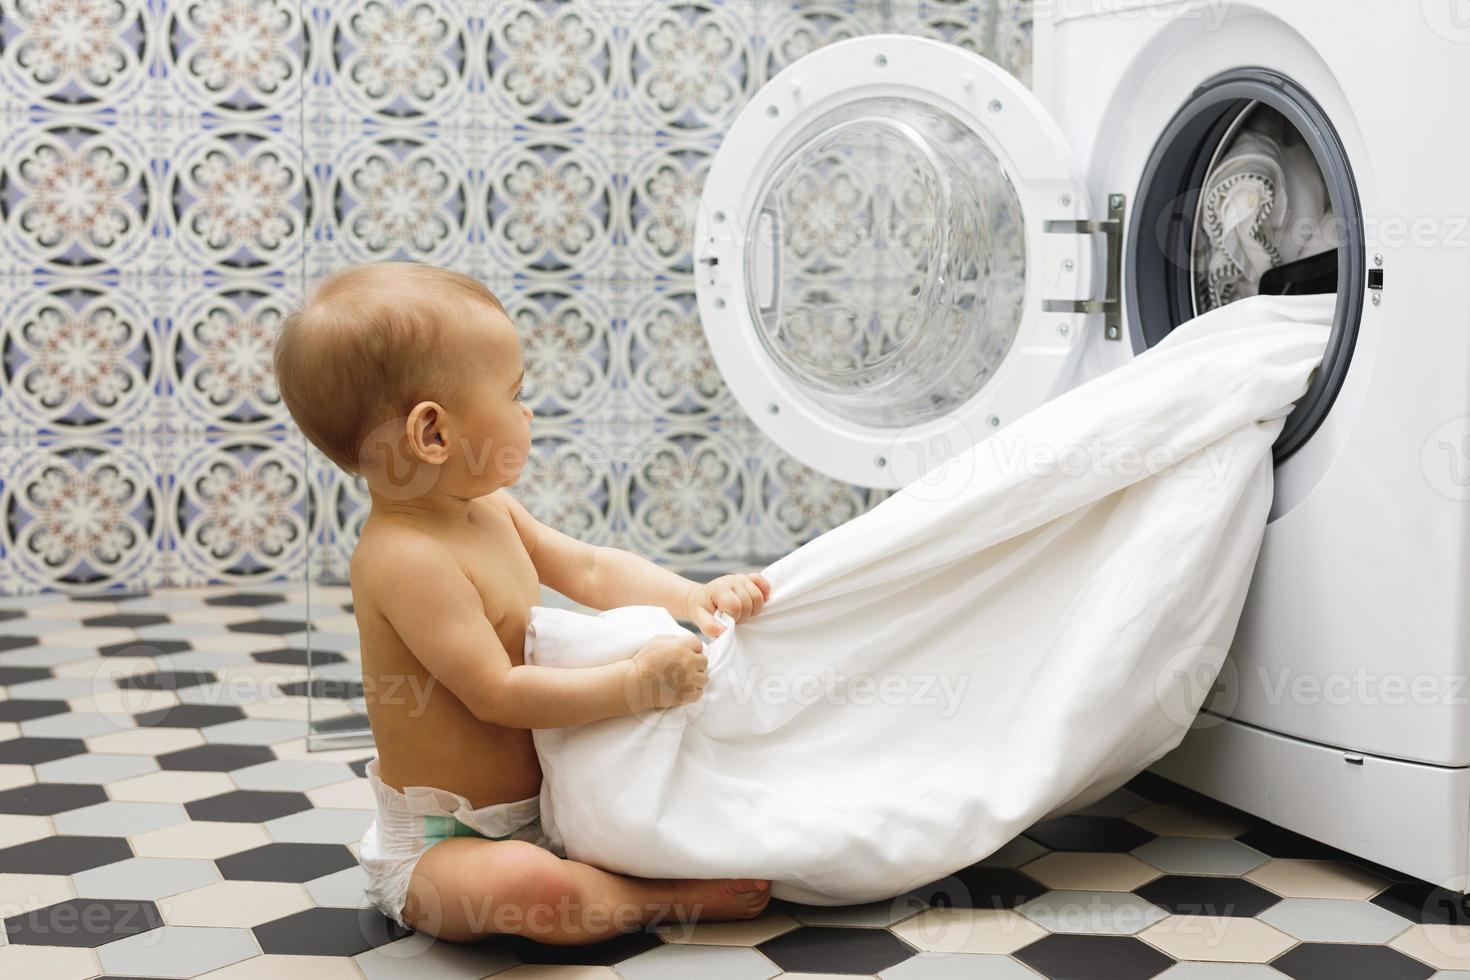 schattig baby jongen naast de het wassen machine foto